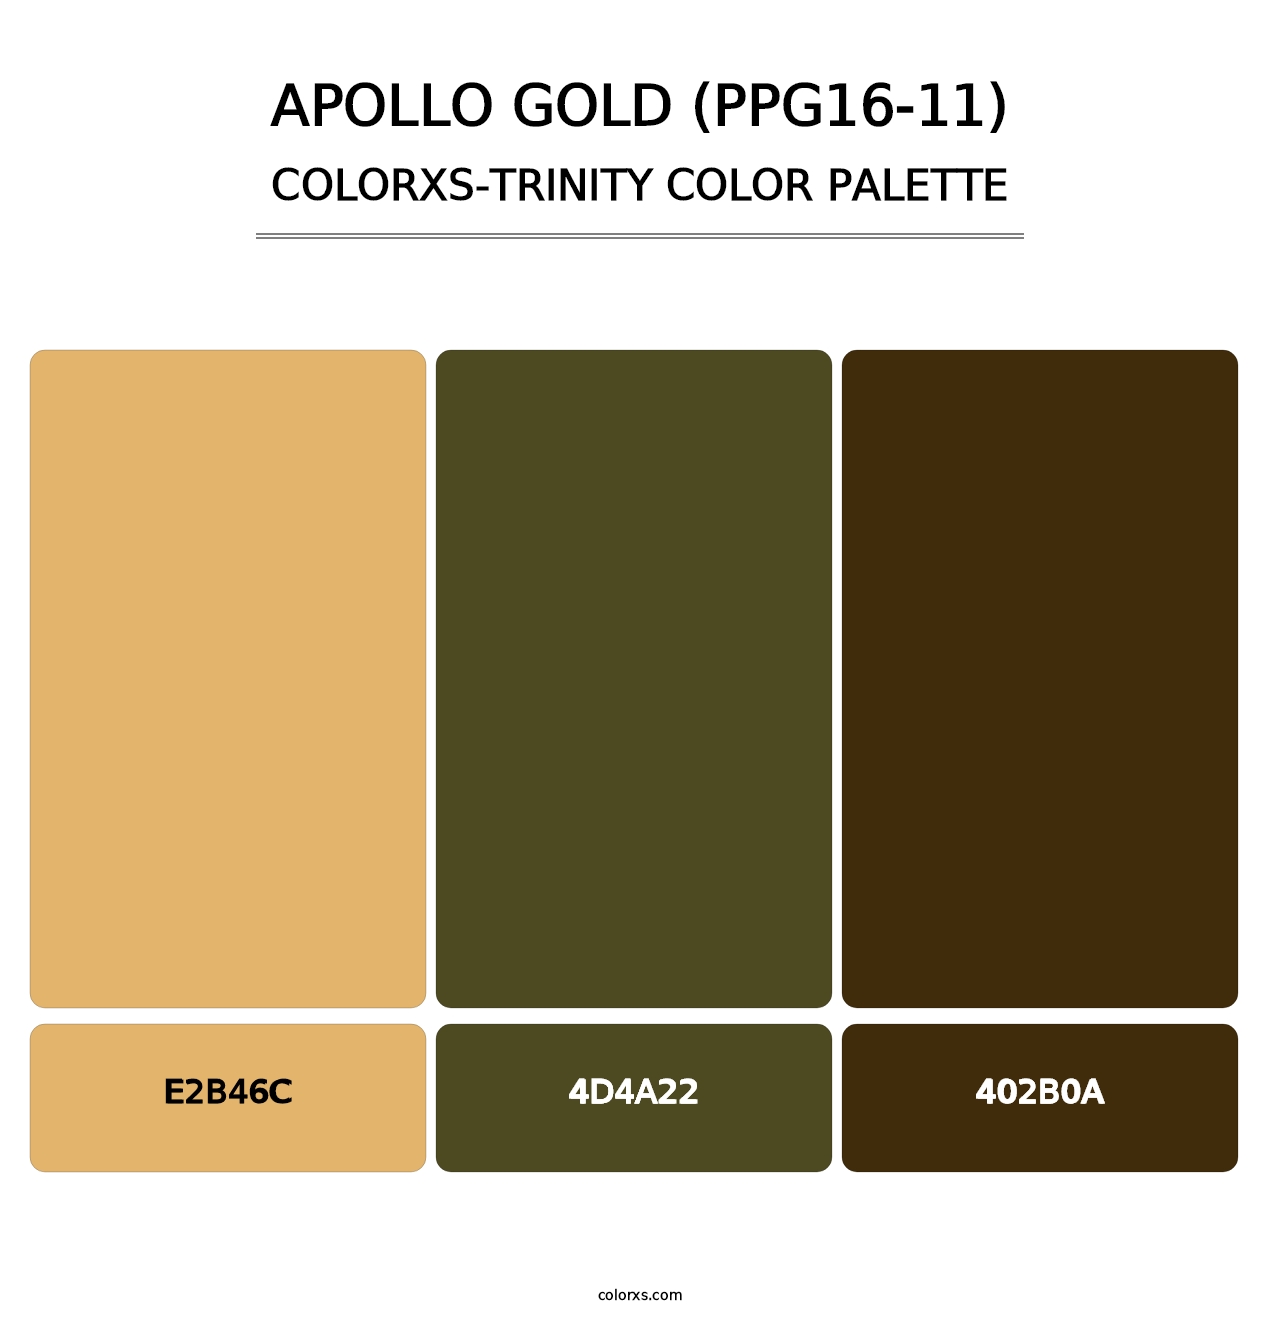 Apollo Gold (PPG16-11) - Colorxs Trinity Palette